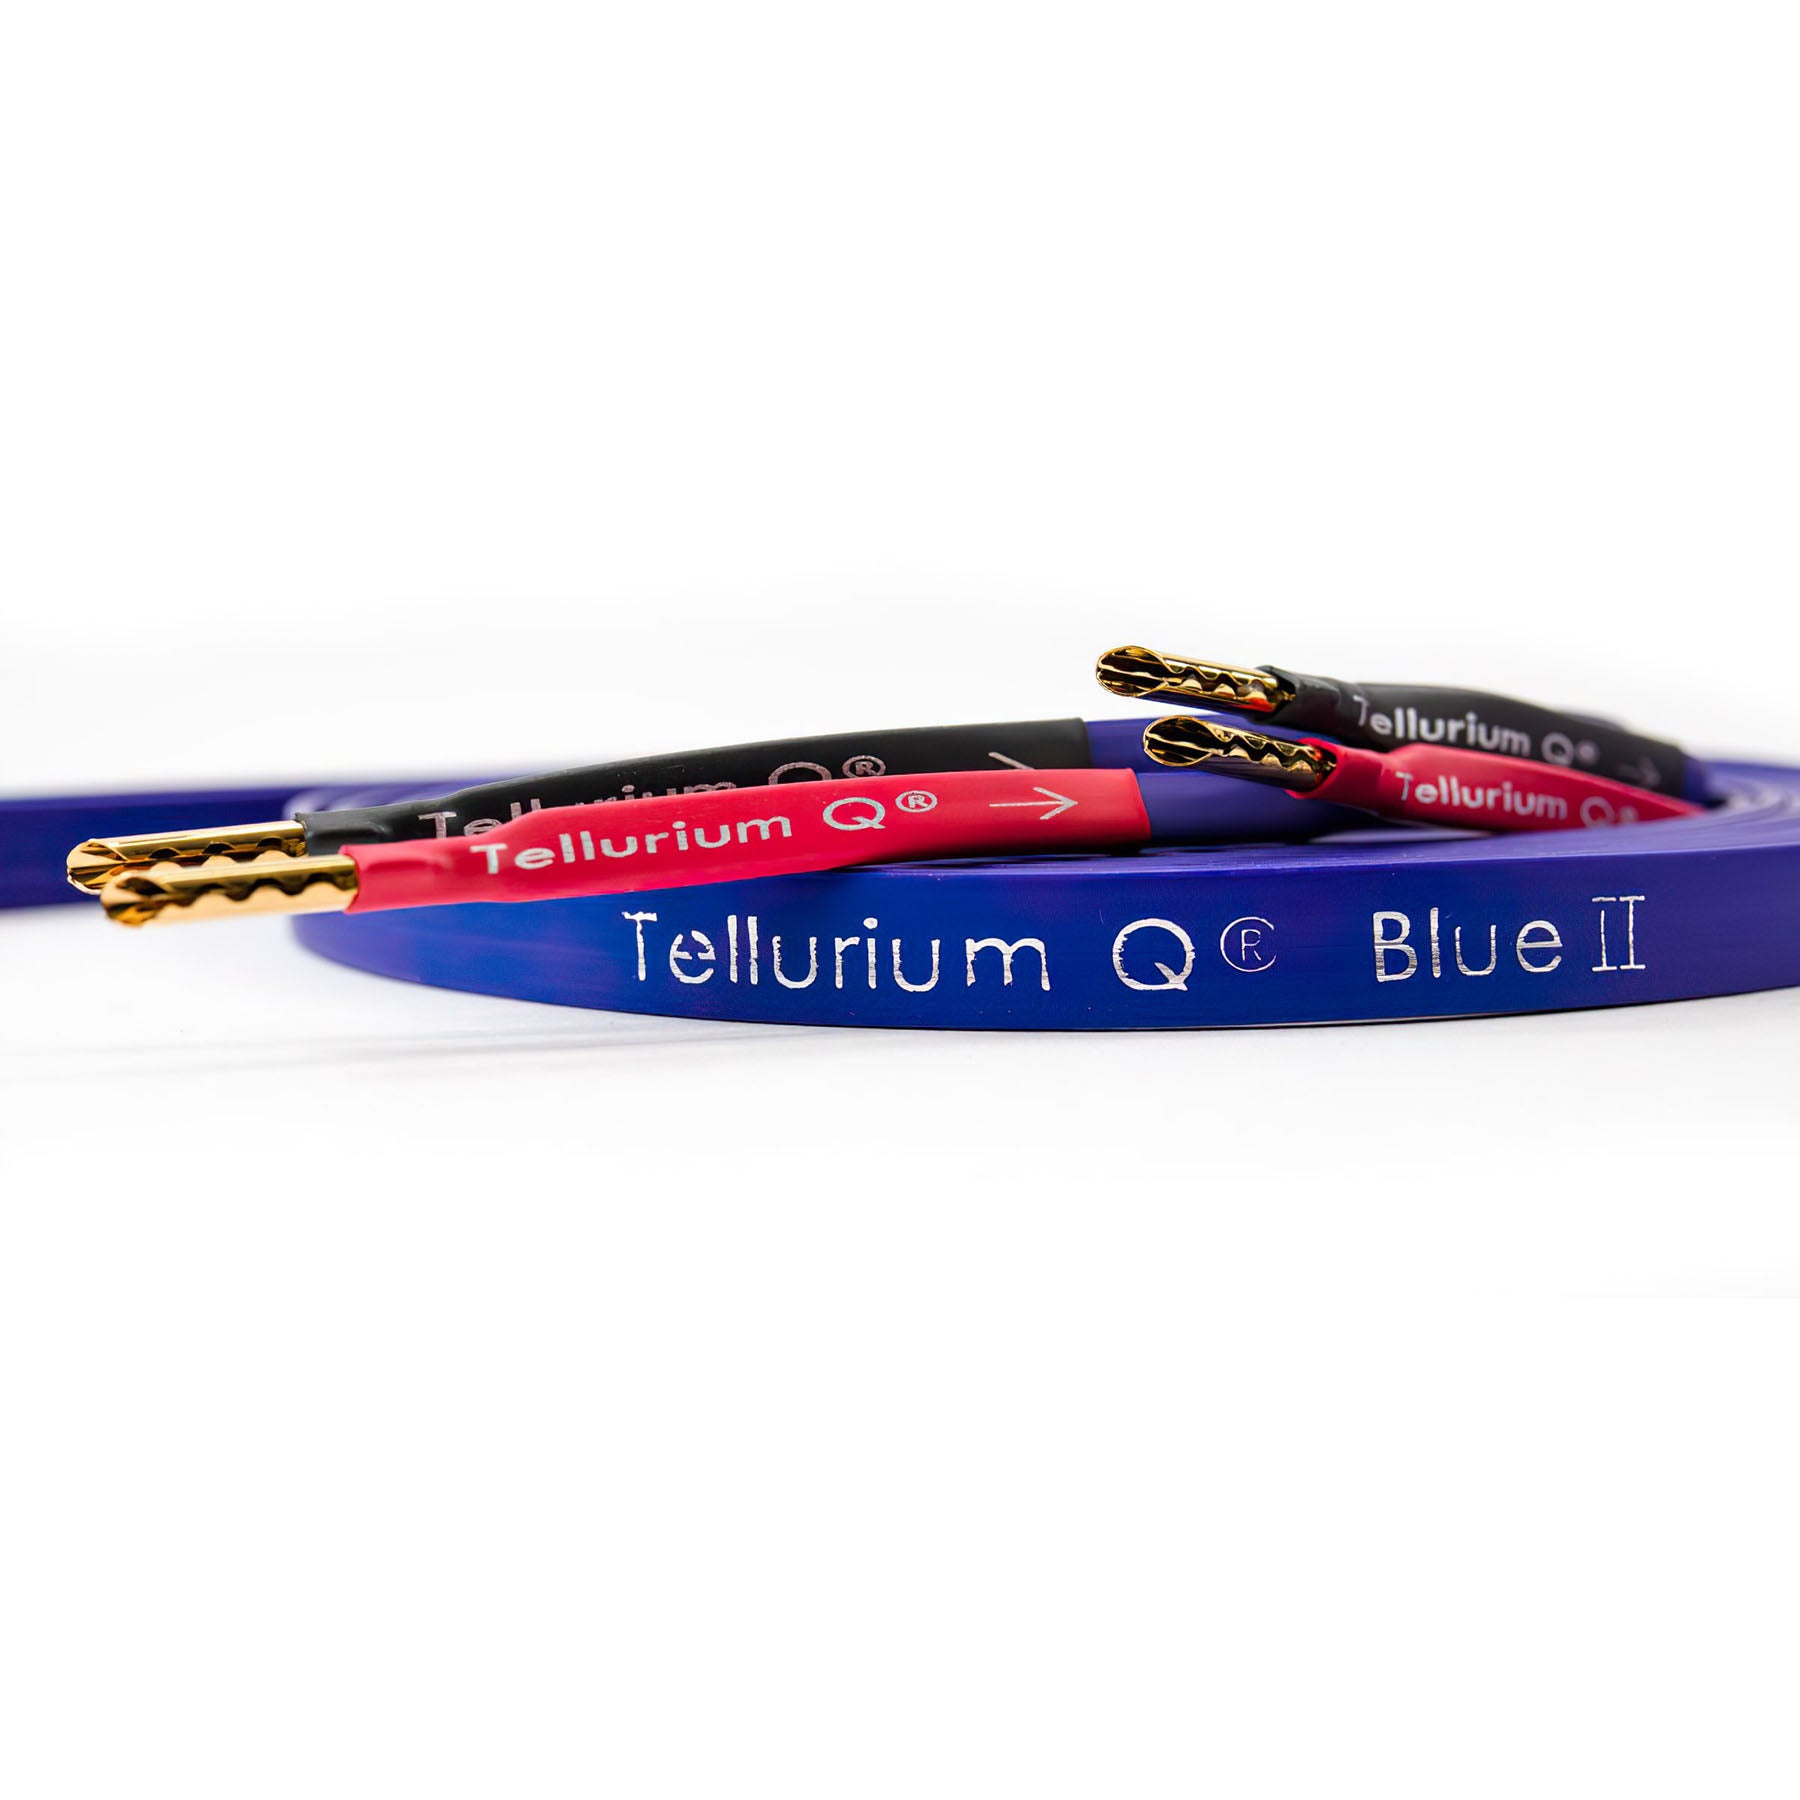 Tellurium Q Blue II Speaker Cable (pair)